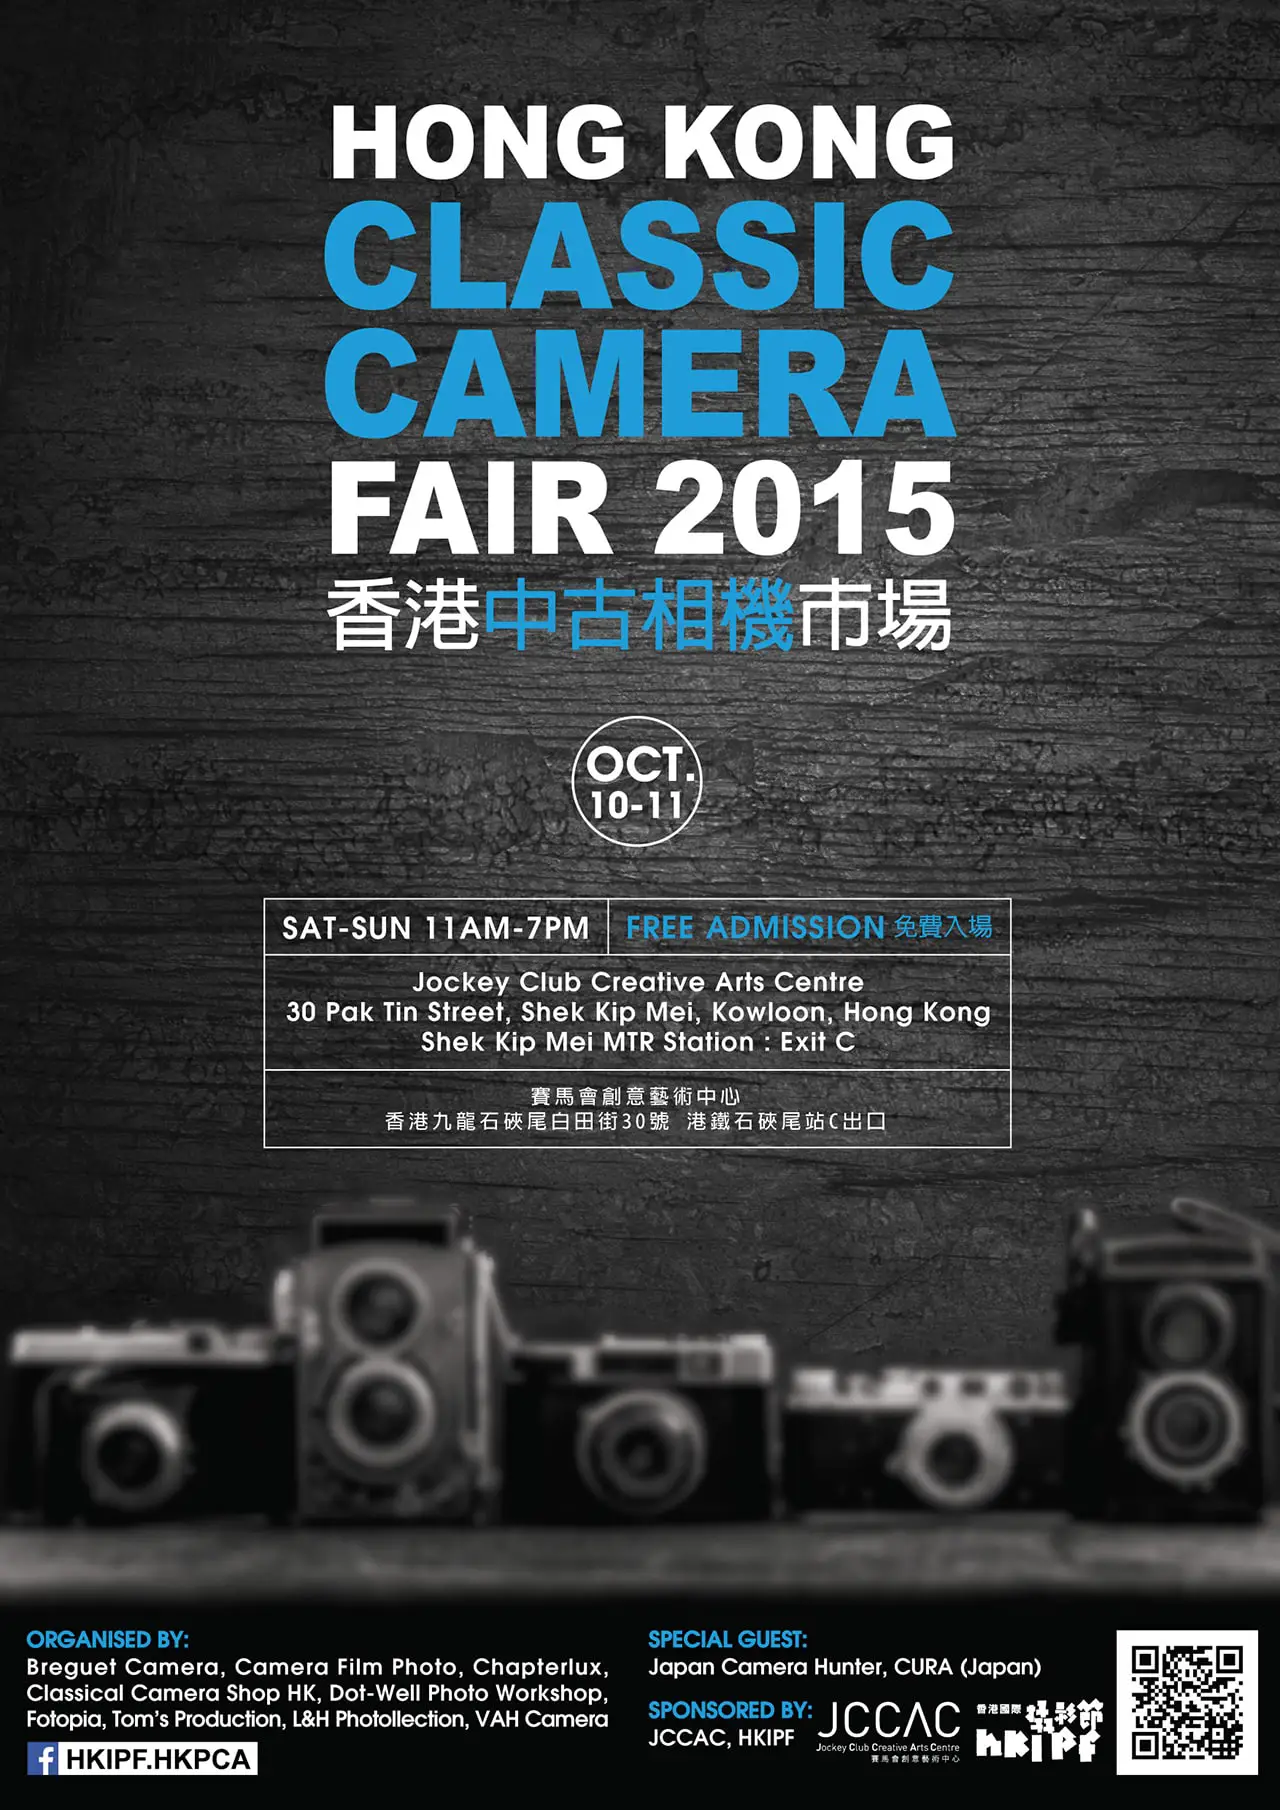 Hong Kong Classic Camera Fair 2015